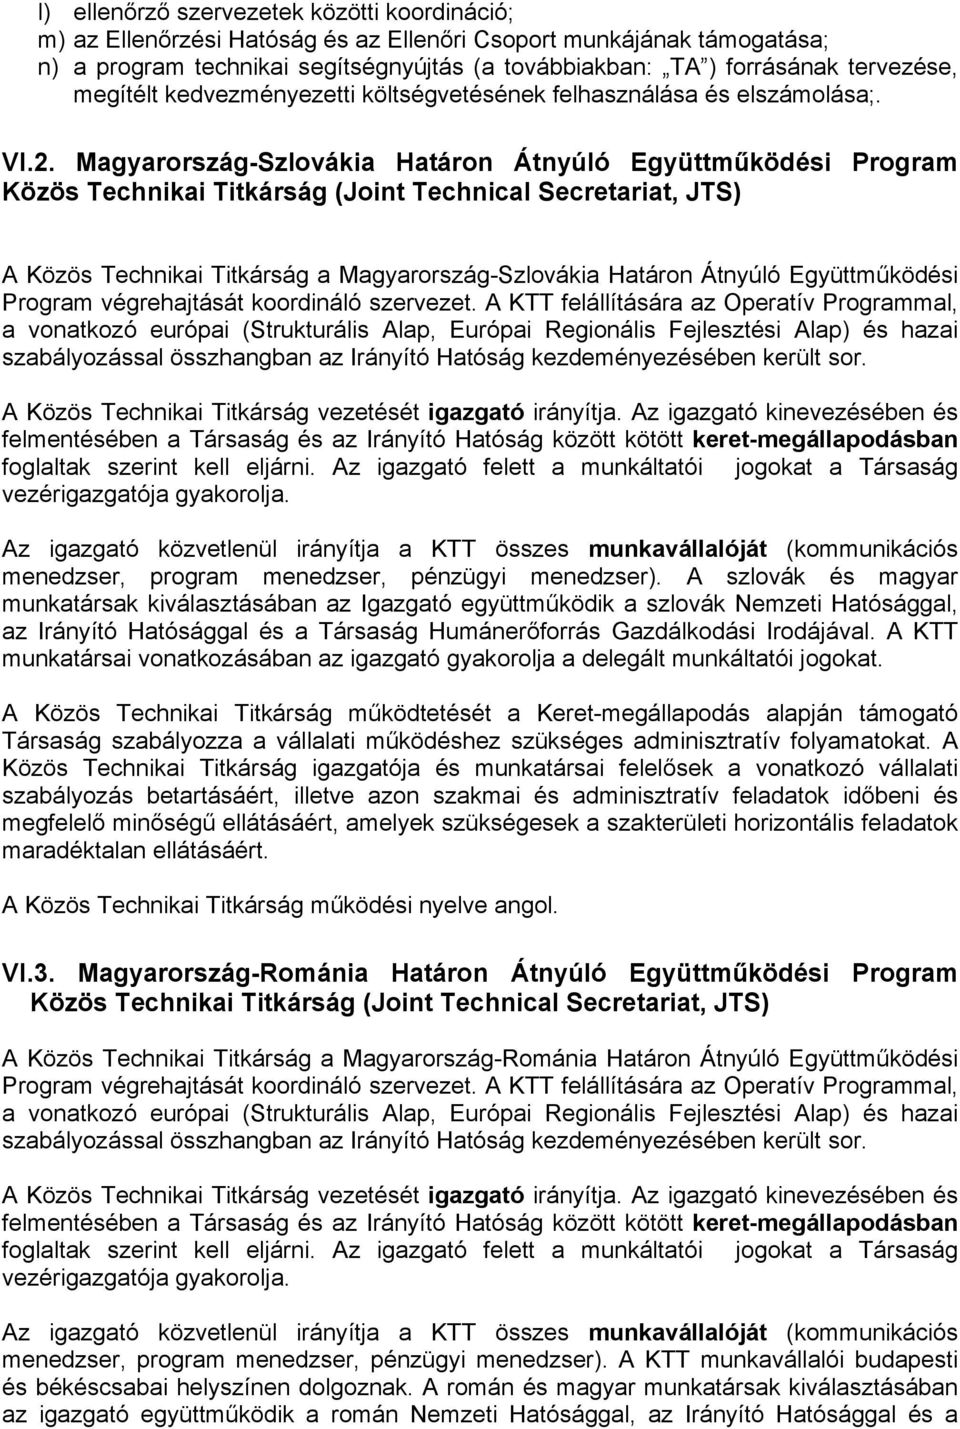 Magyarország-Szlovákia Határon Átnyúló Együttműködési Program Közös Technikai Titkárság (Joint Technical Secretariat, JTS) A Közös Technikai Titkárság a Magyarország-Szlovákia Határon Átnyúló